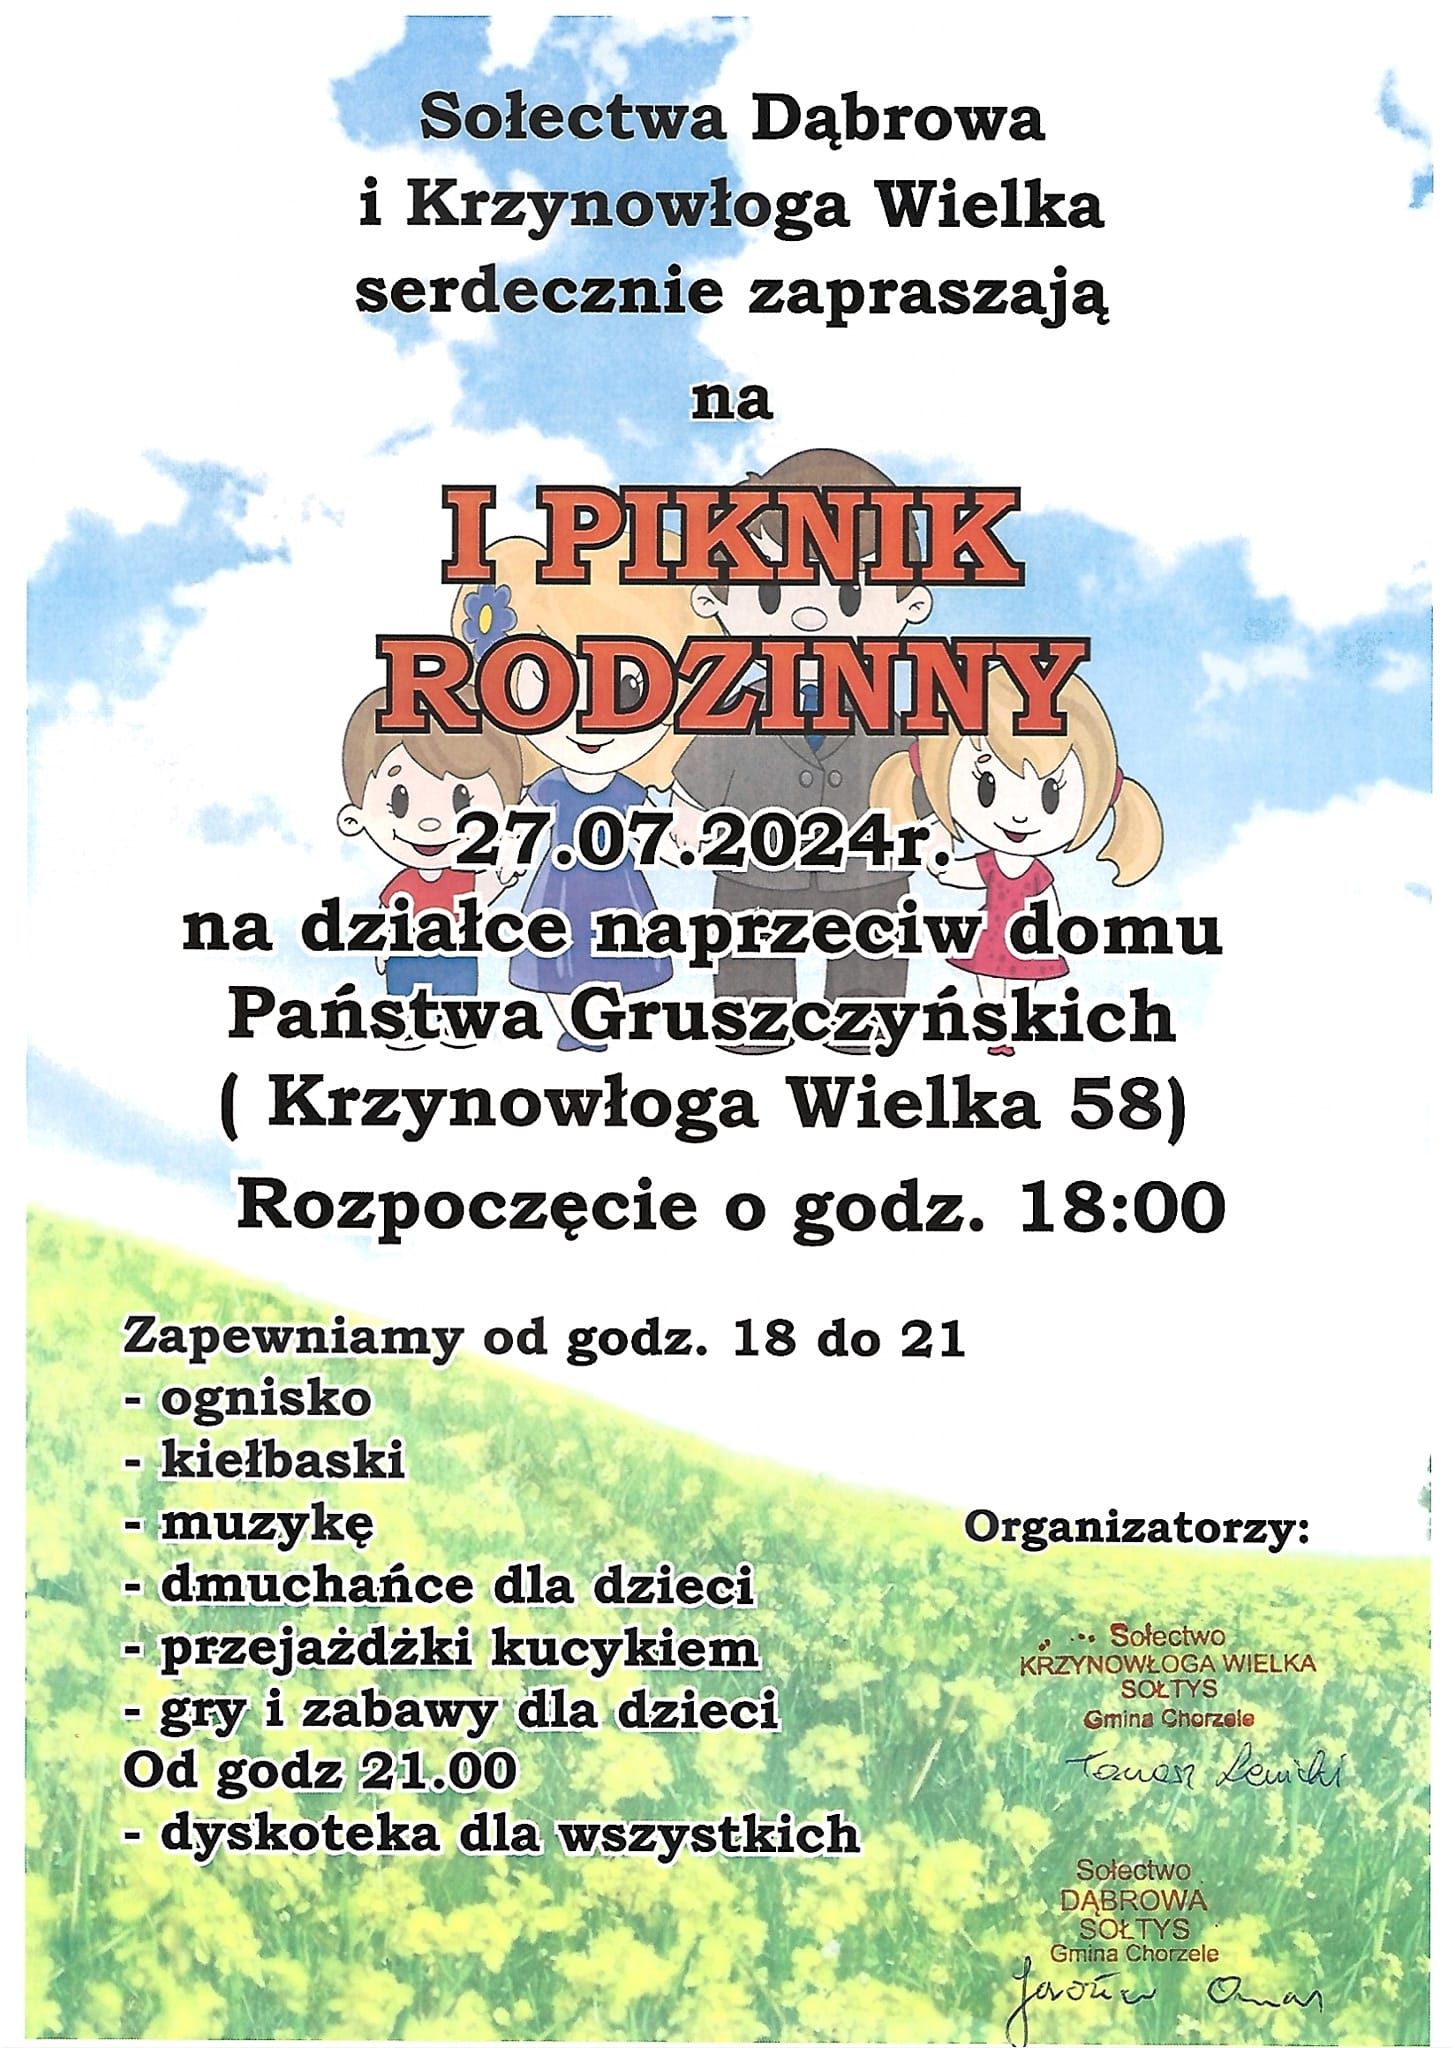 Plakat informujący o pikniku rodzinnym w Krzynowłodze Wielkiej.